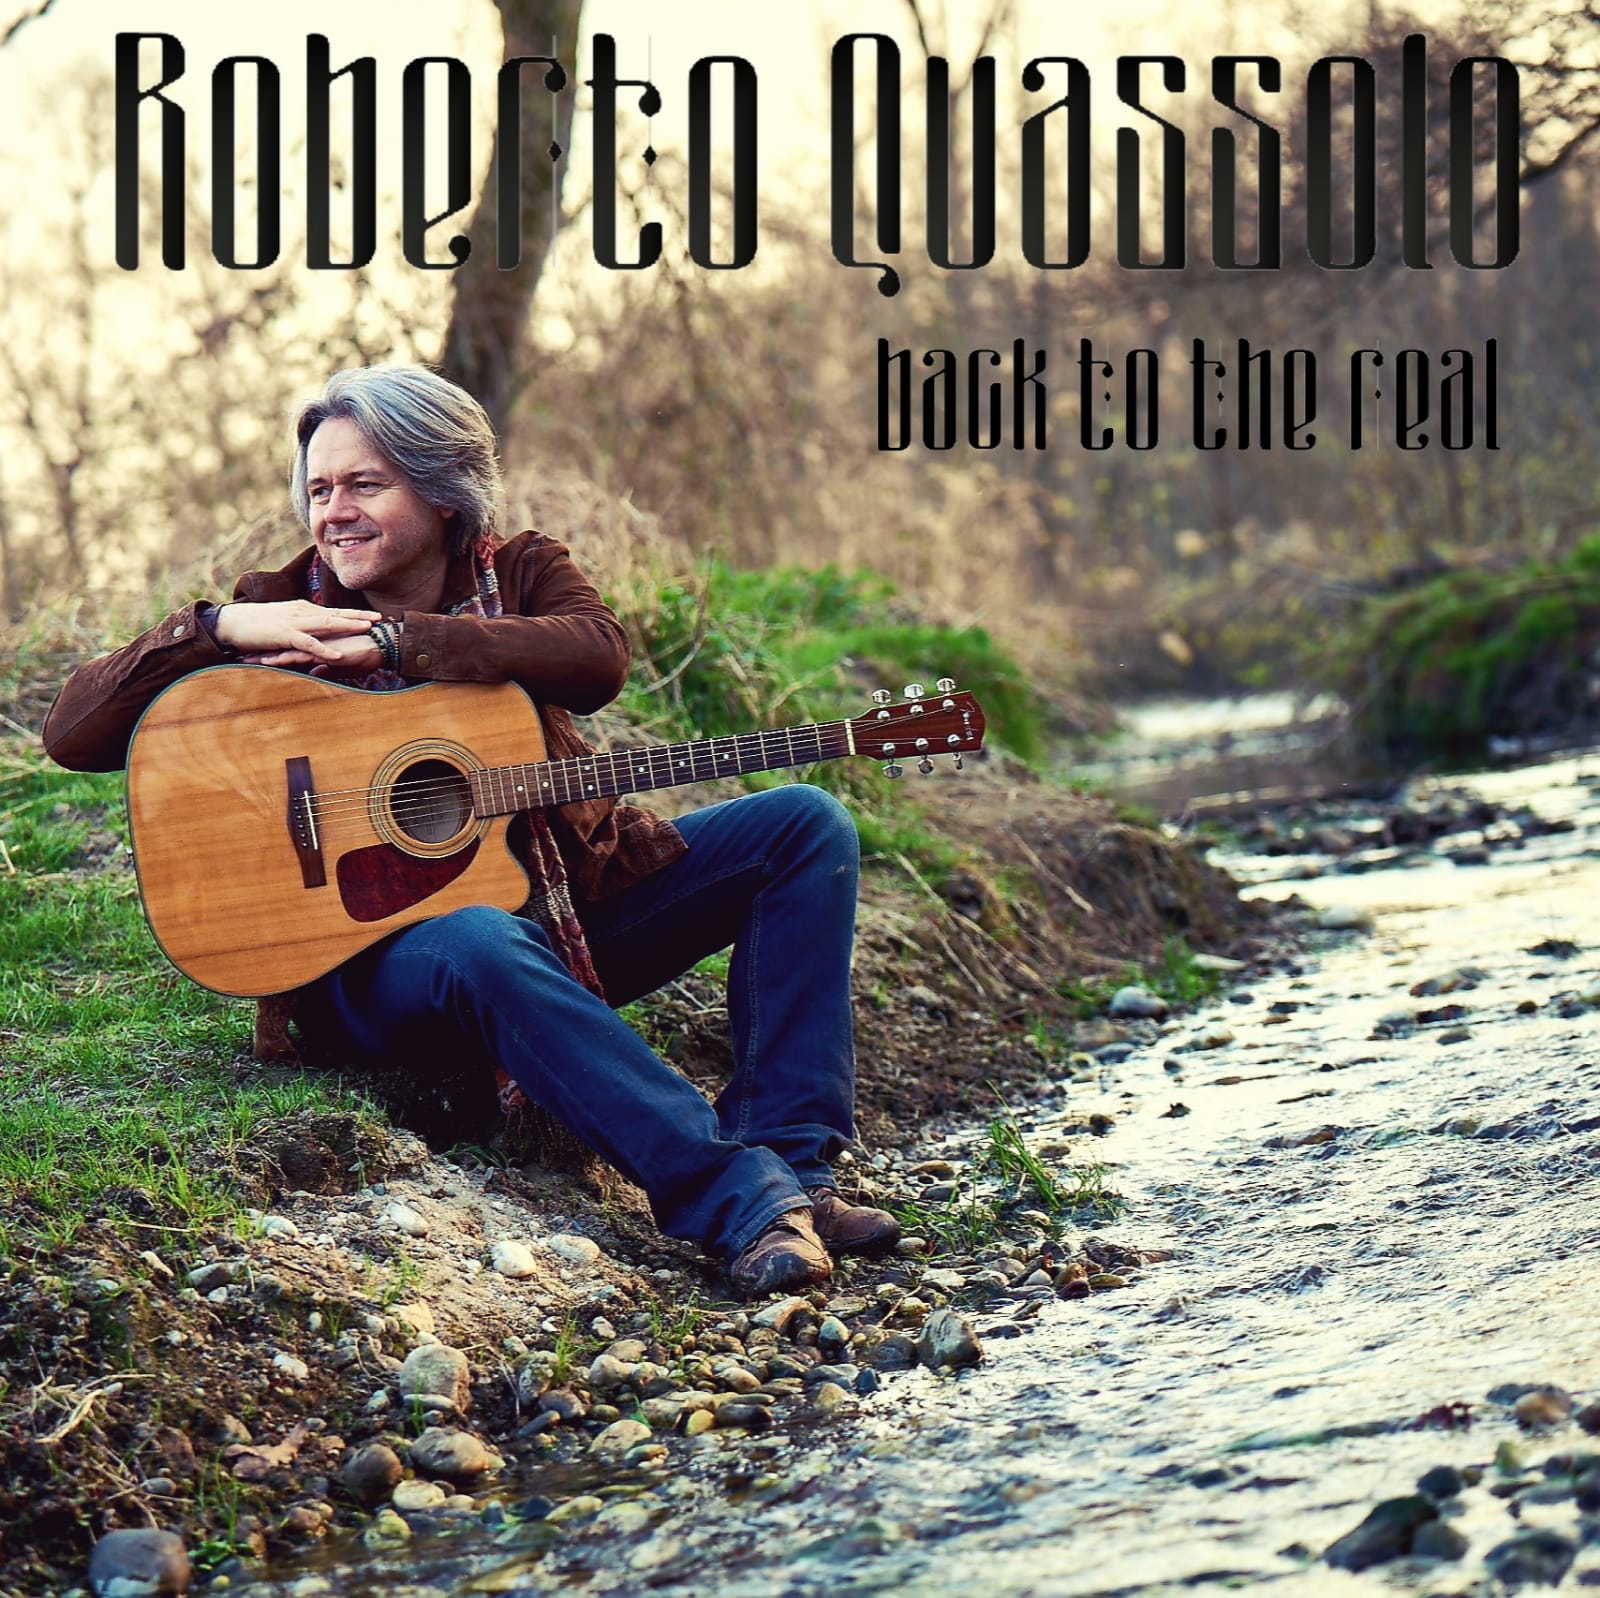 Scopri di più sull'articolo “Back To The Real”, il nuovo singolo di Roberto Quassolo